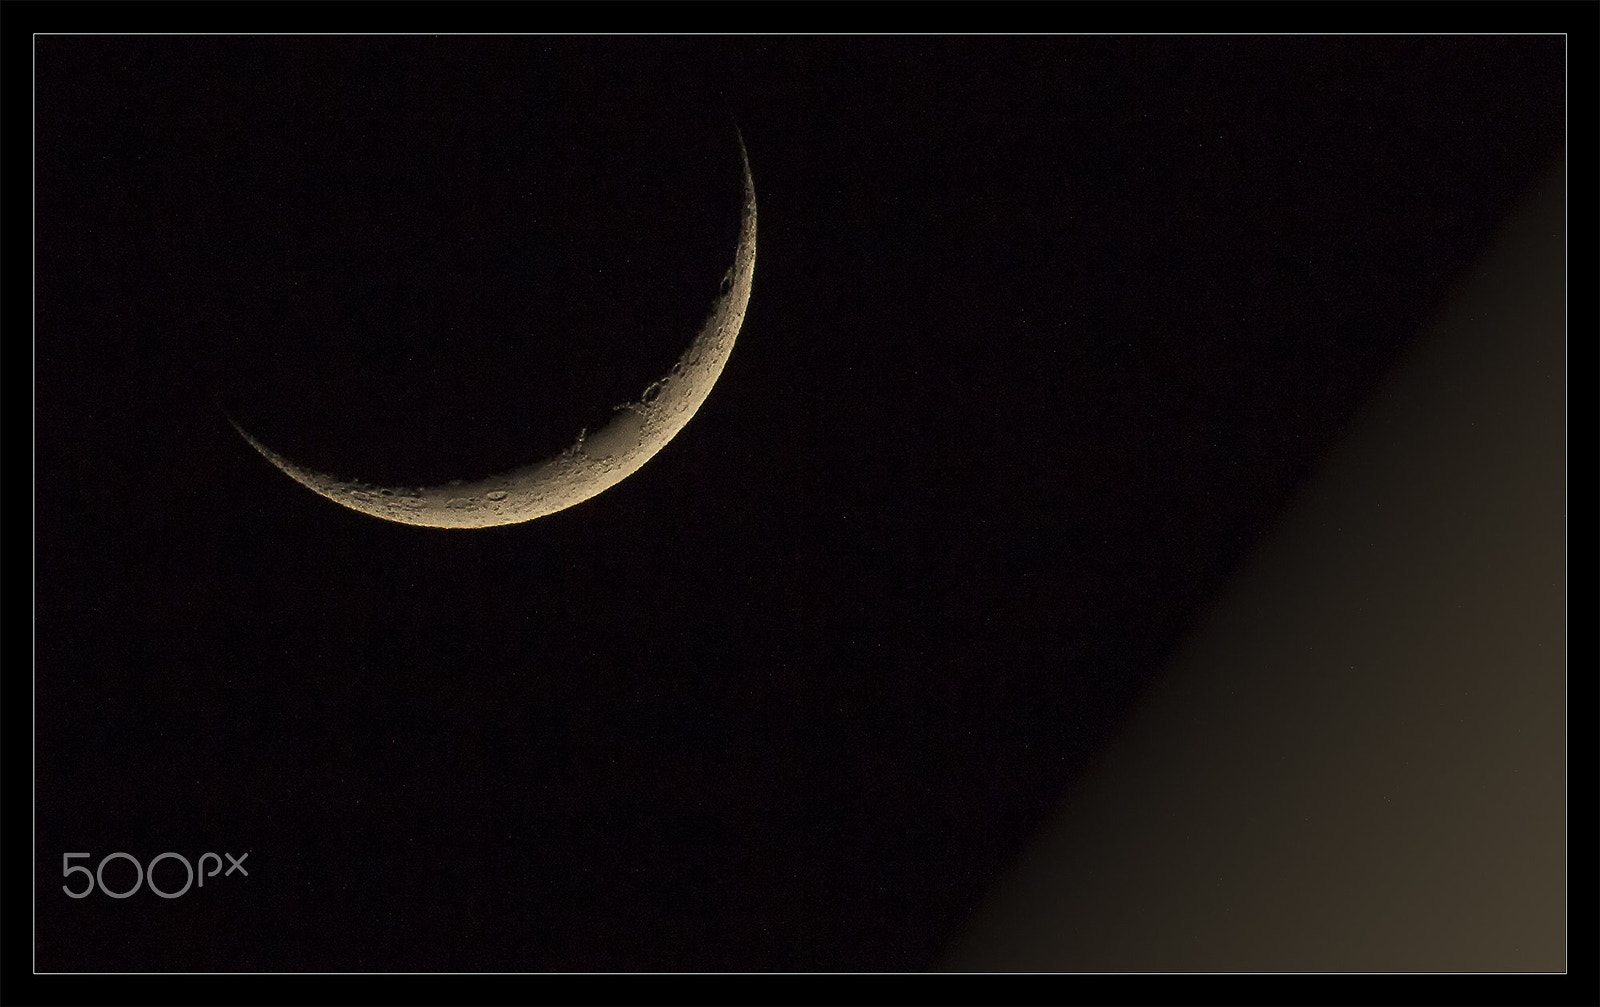 Canon EOS 60D sample photo. Moon - 30/03/17, 20:06:20 photography